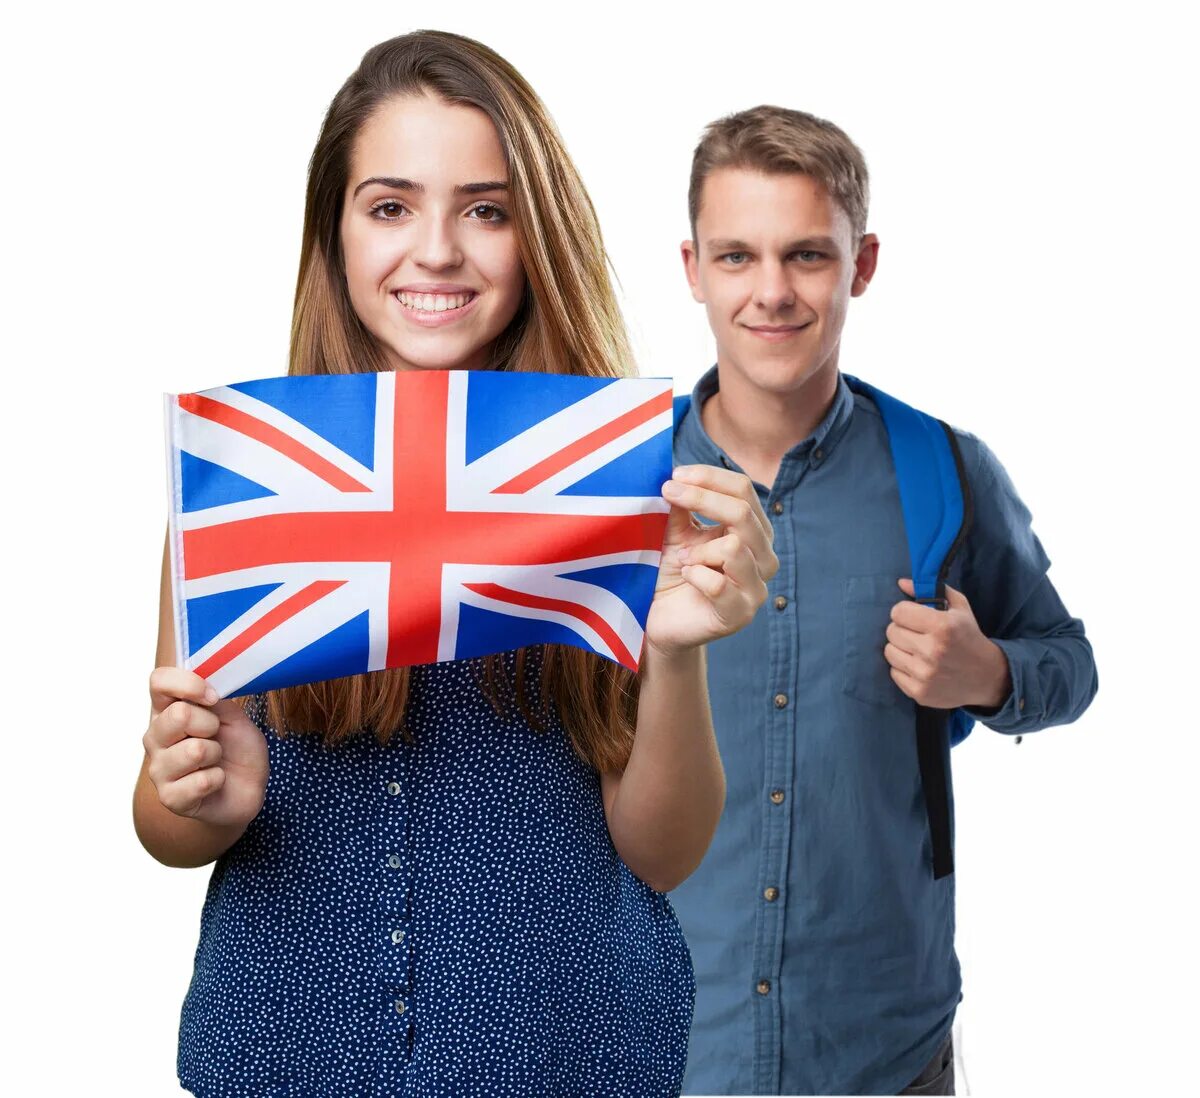 Иностранные языки важно изучать. Английский для детей и взрослых. Разговорный английский для подростков. Курсы английского. Ребенок с британским флагом.